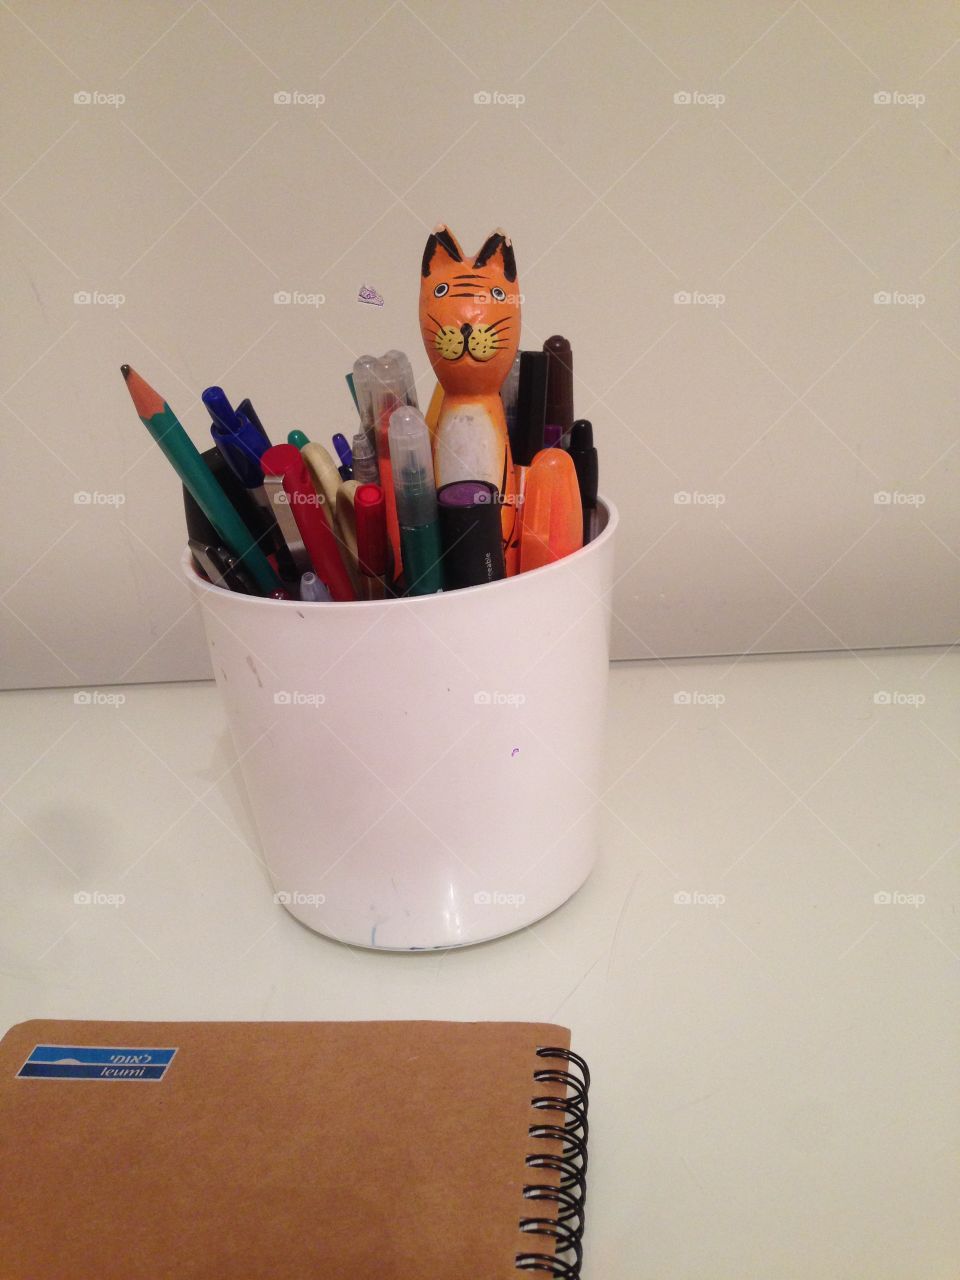 Pencils and cat pencil